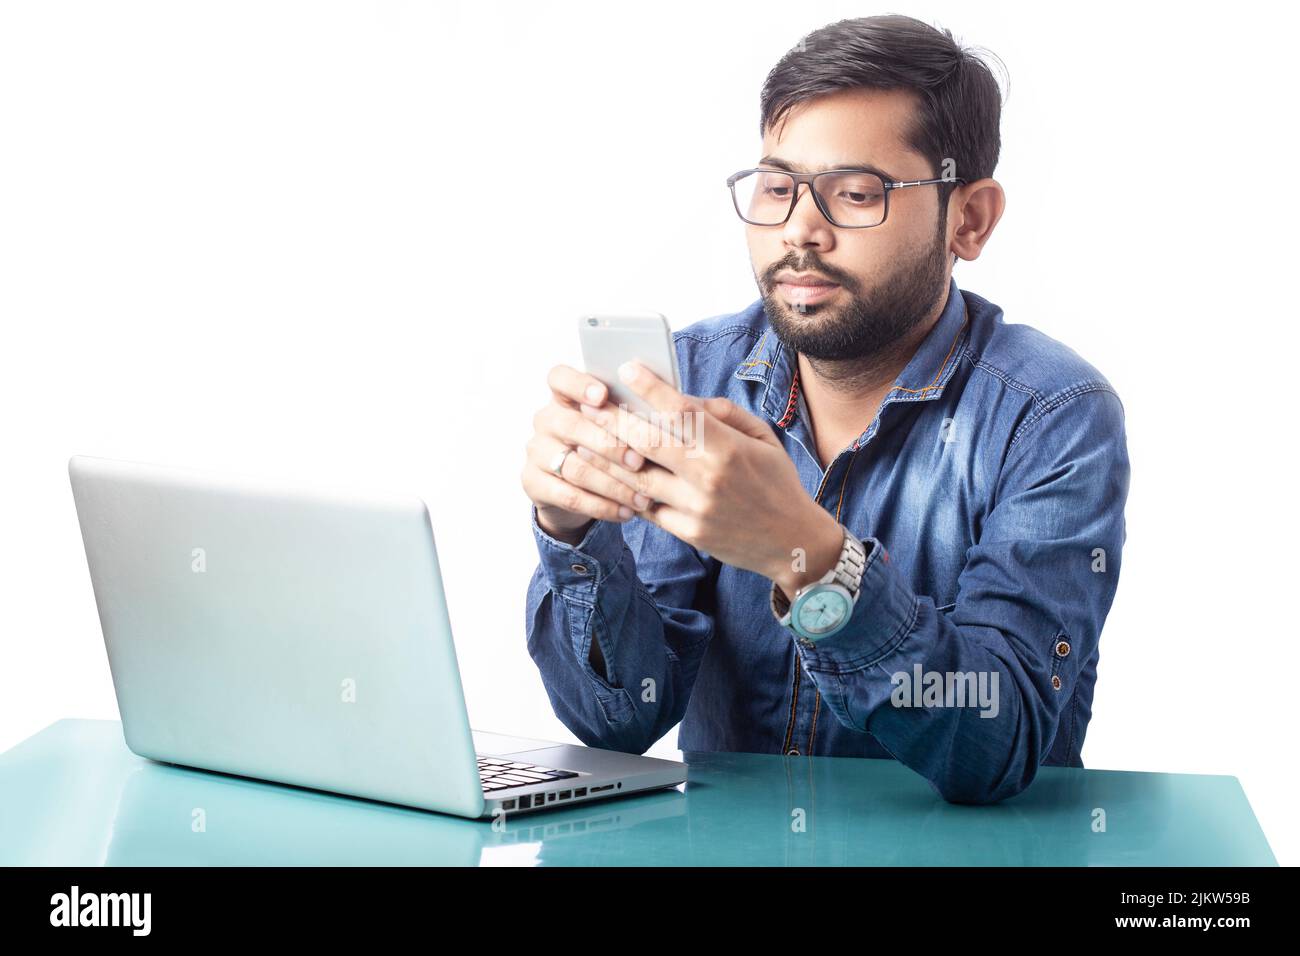 Abgelenkt arbeitende Person, die vor einem Laptop auf weißem Hintergrund auf dem Handy tippt Stockfoto